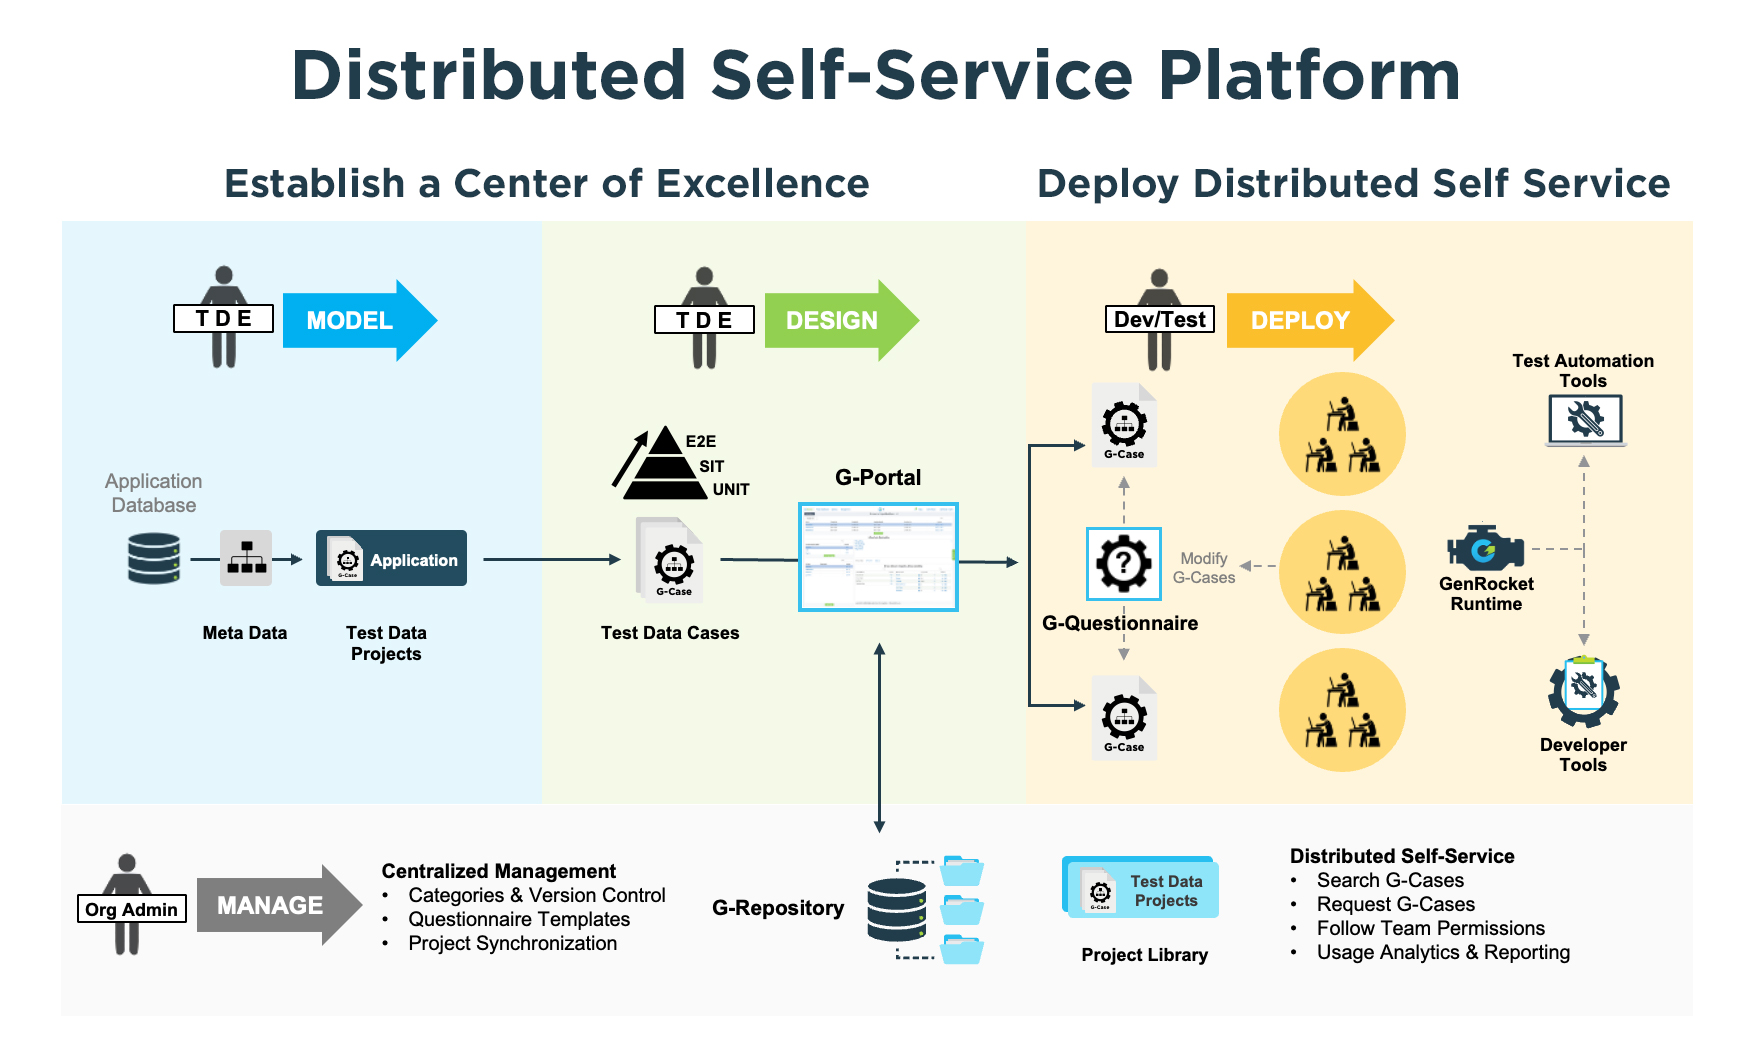 GenRocket Distributed Self Service Platform